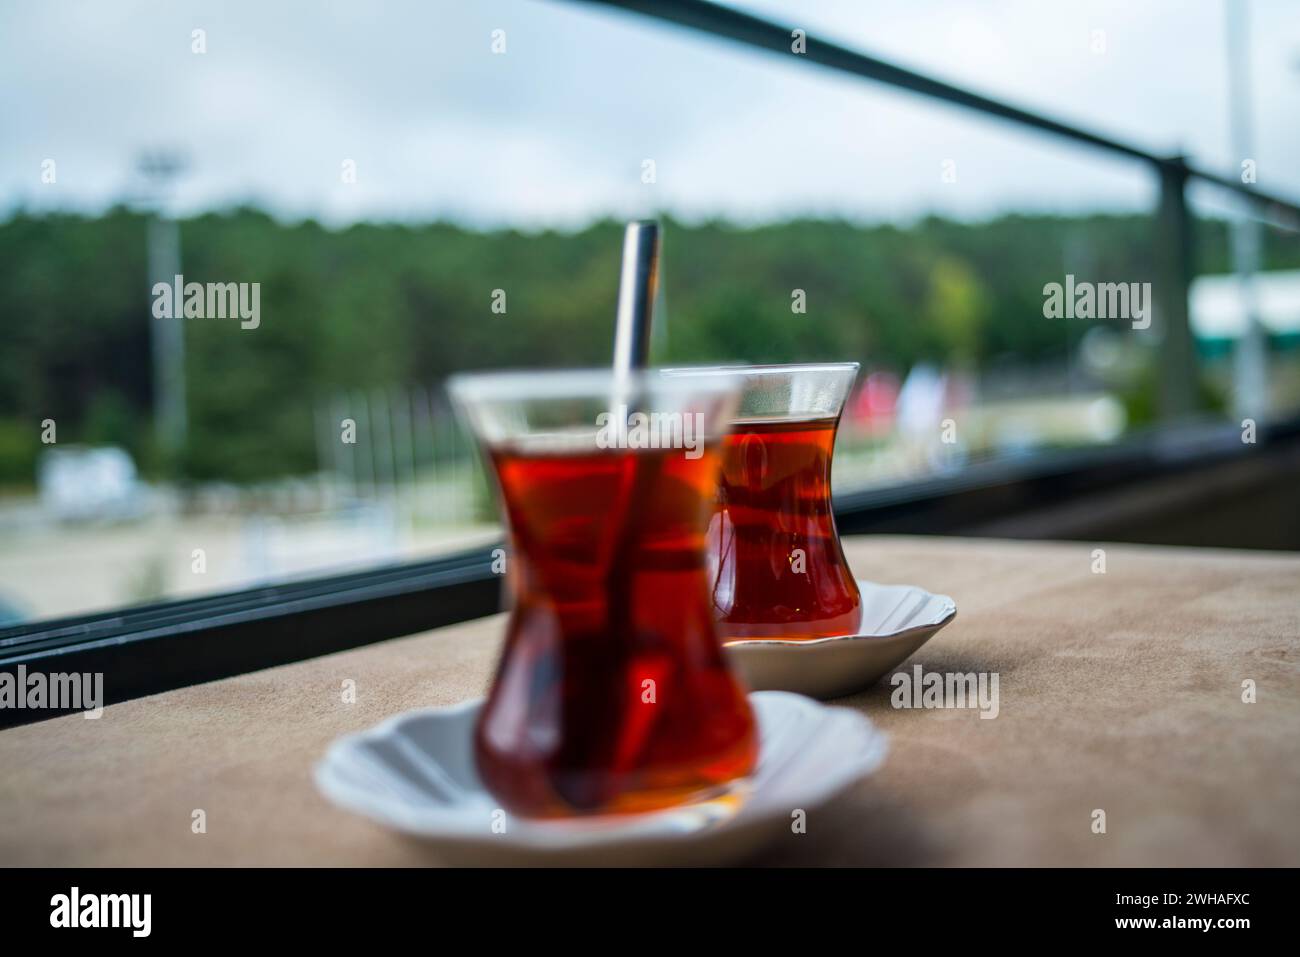 Deux tasses à thé turques, un duo chaleureux et aromatique, capturant l'essence de la culture du thé turc et de l'hospitalité dans un cadre confortable et traditionnel. Banque D'Images